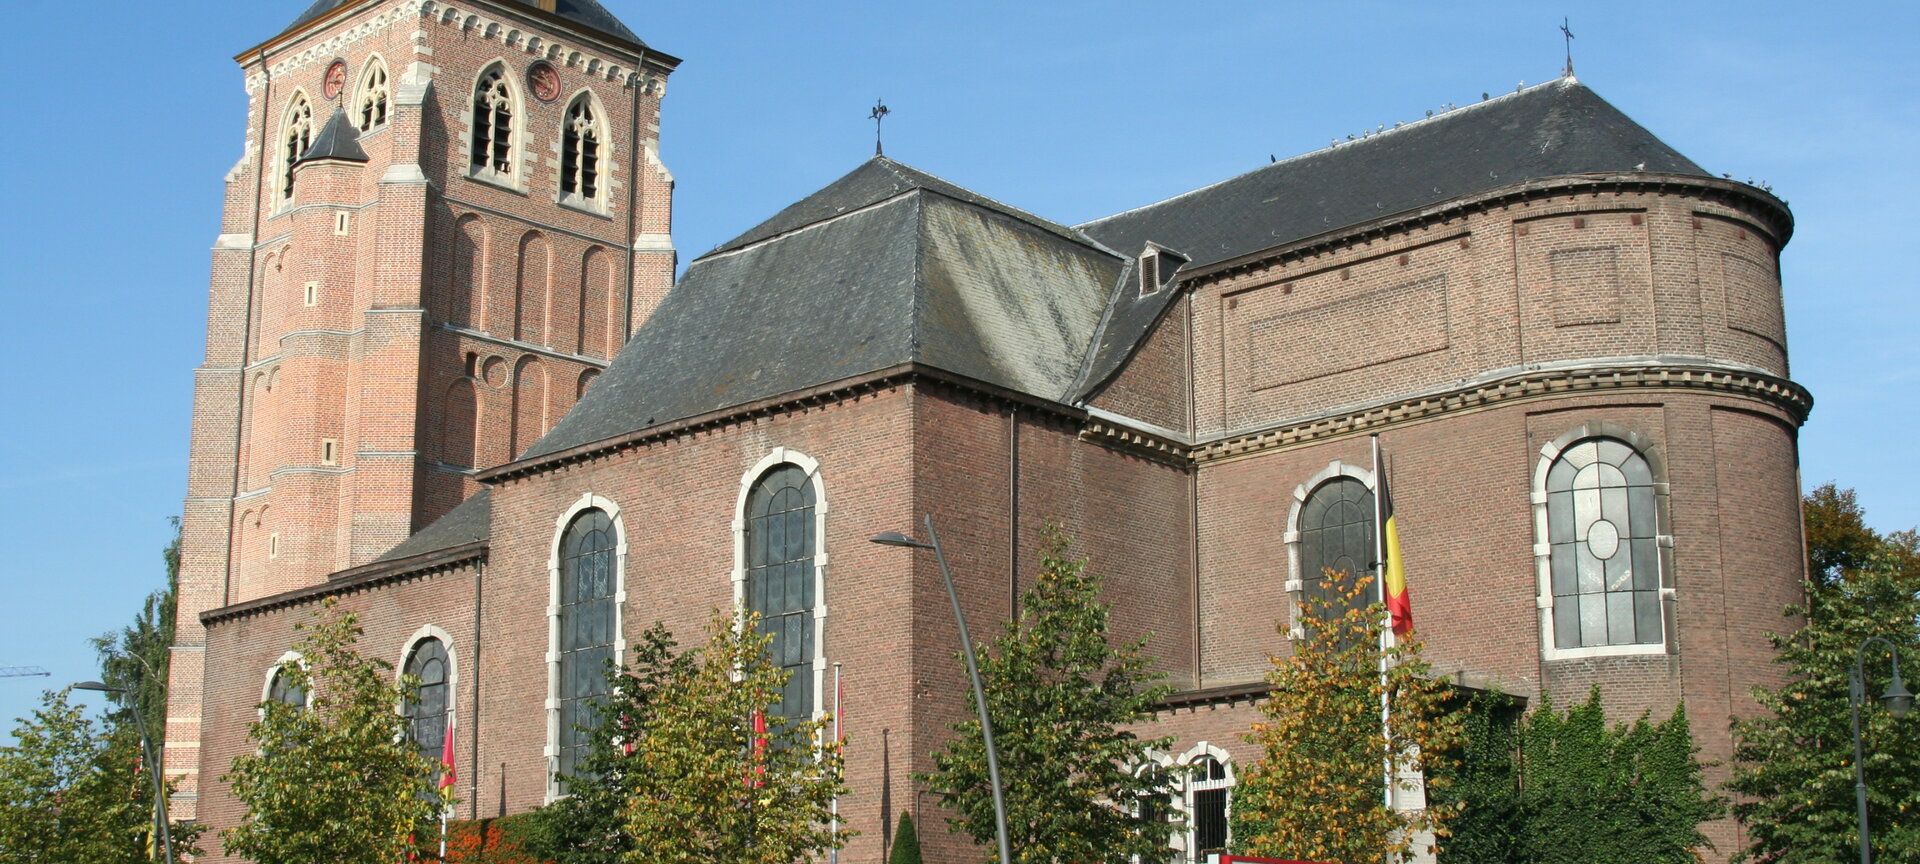 Sint-Servaaskerk - kerk